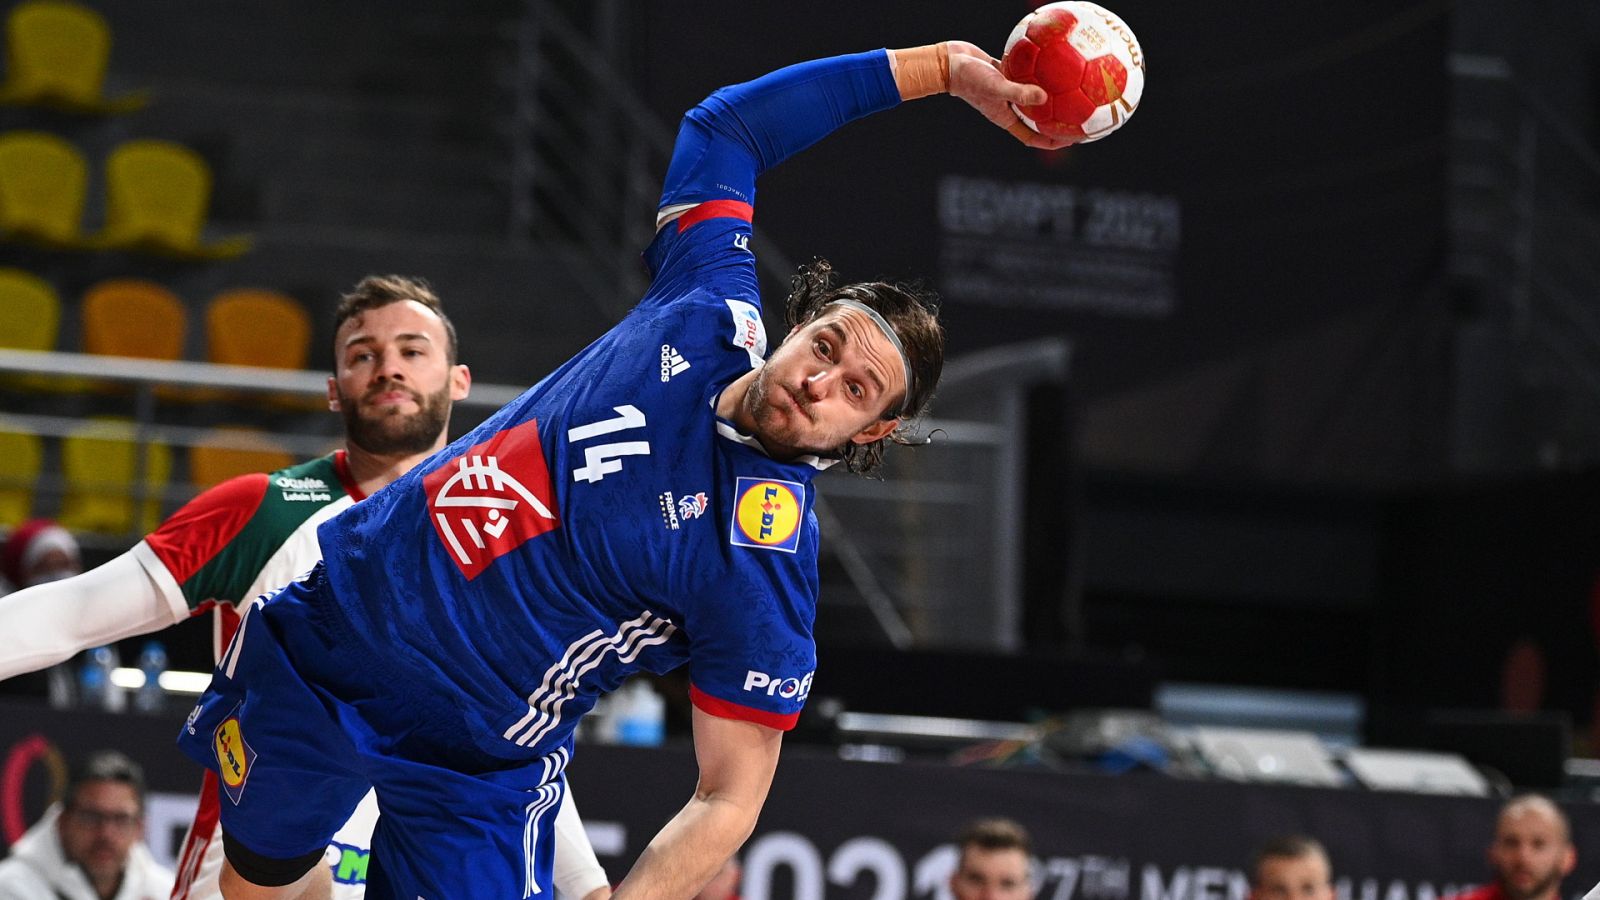 Balonmano - Campeonato del Mundo masculino: 1/4 Final: Francia - Hungría